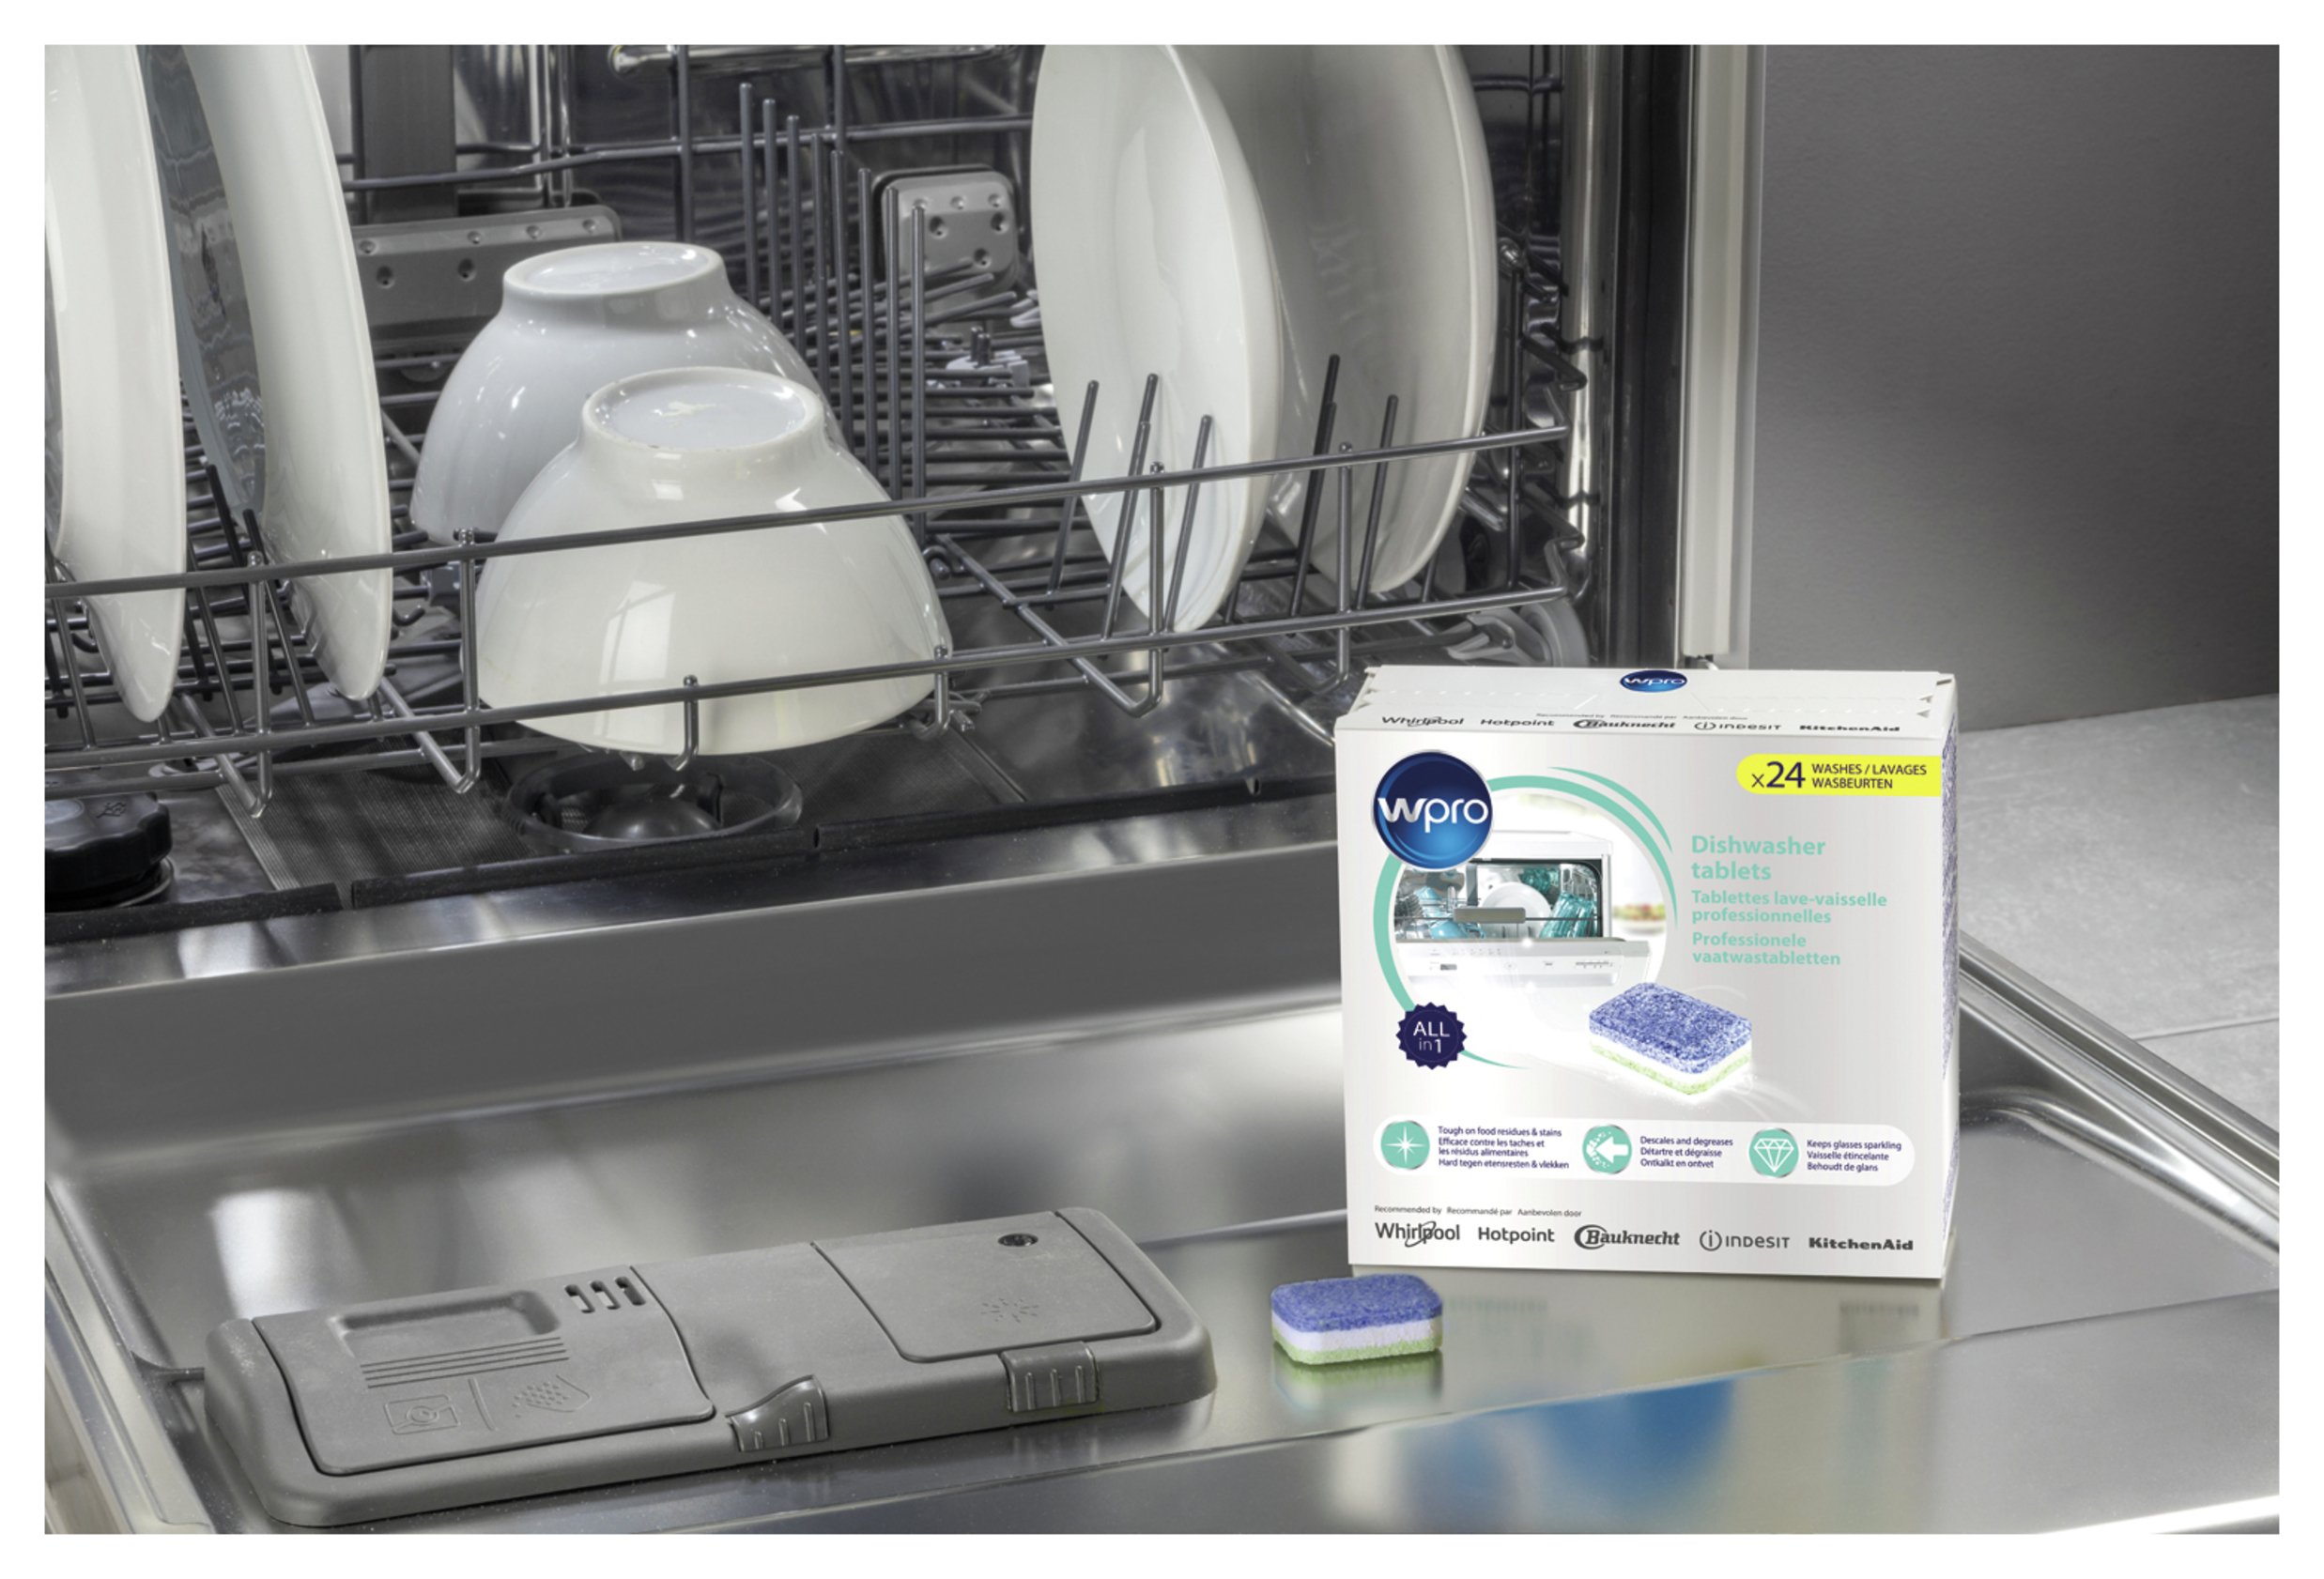 Wpro Dishwasher Tablets - 24 Tablets